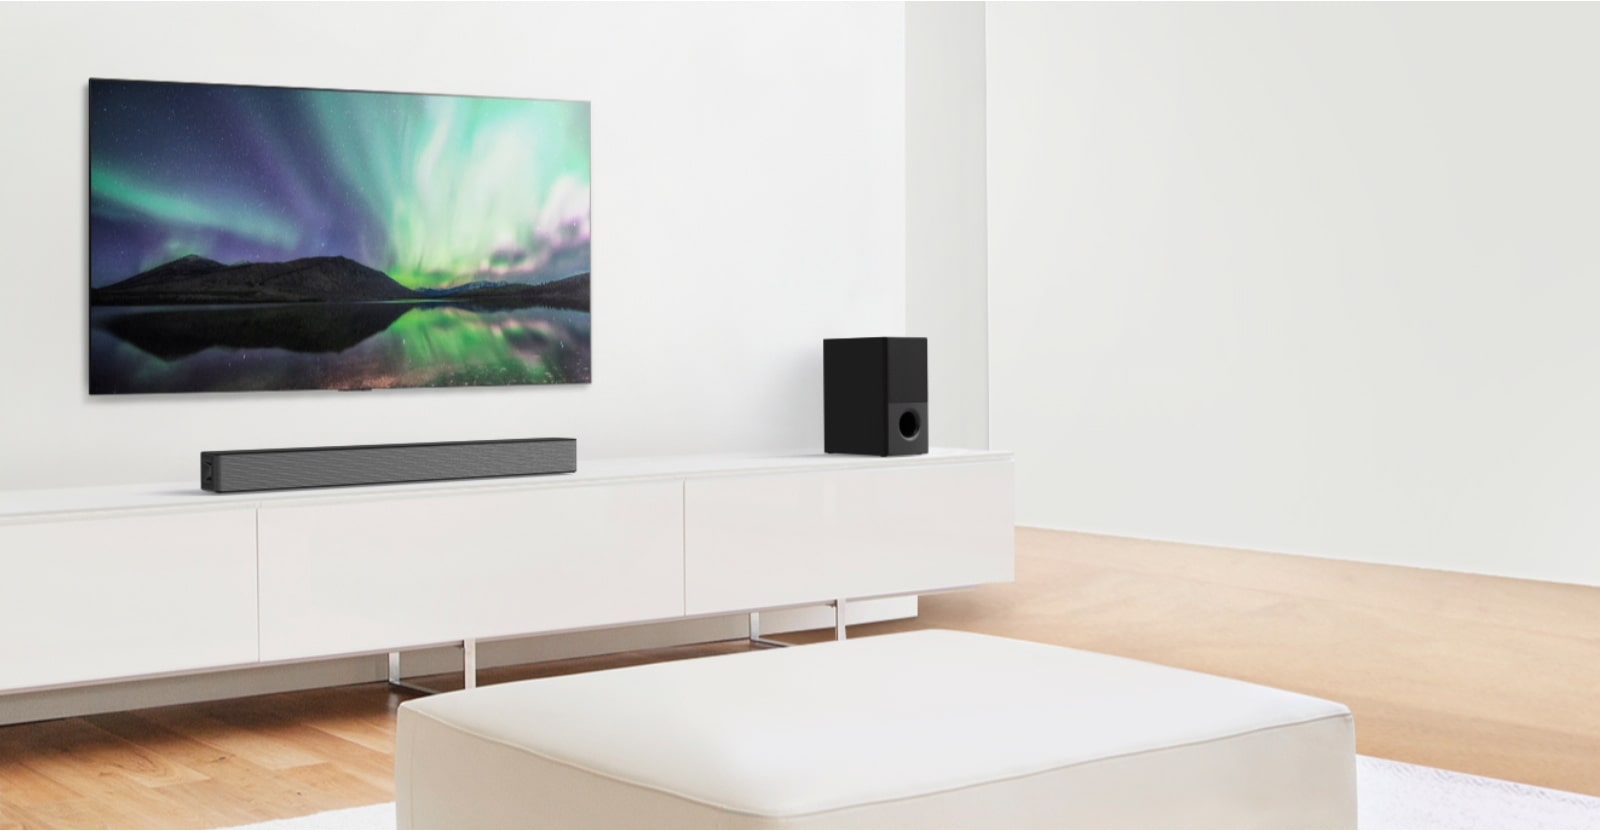 تظهر معاينة الفيديو نظام الصوت LG Soundbar في غرفة معيشة بيضاء مع إعداد 4.1 قناة.